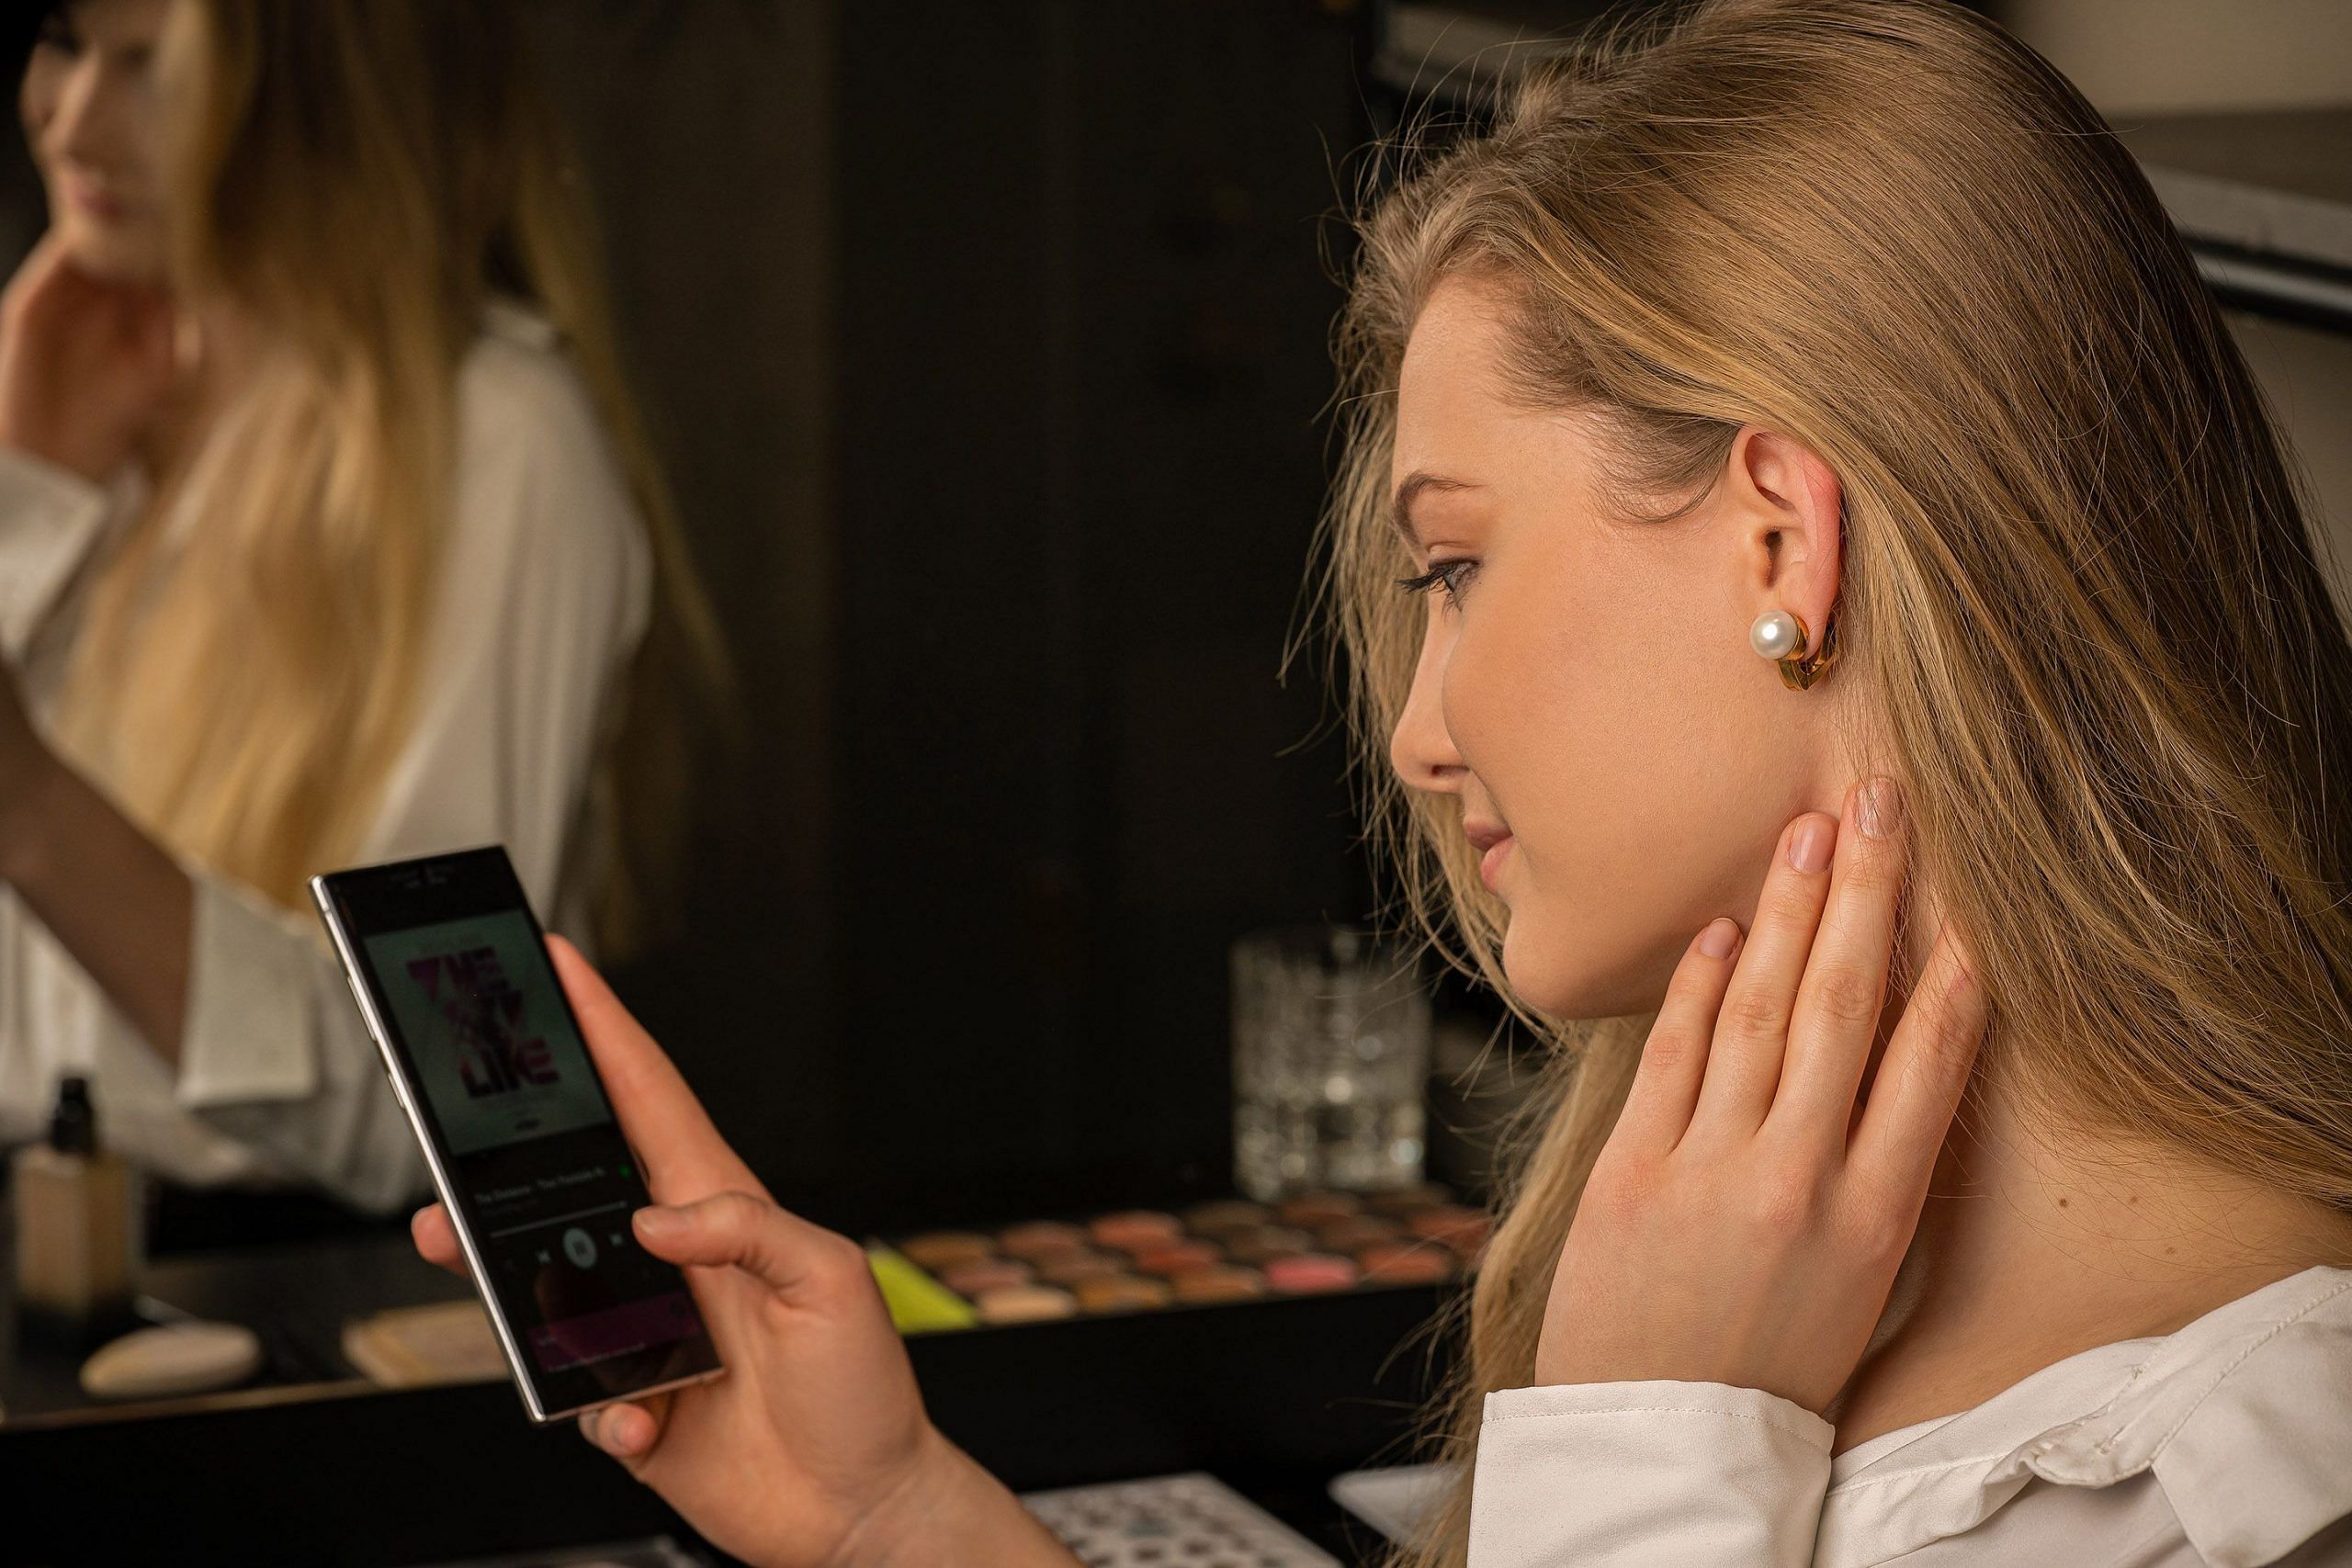 Audio Earrings  Earphones made Earrings by NOVA Products  Kickstarter